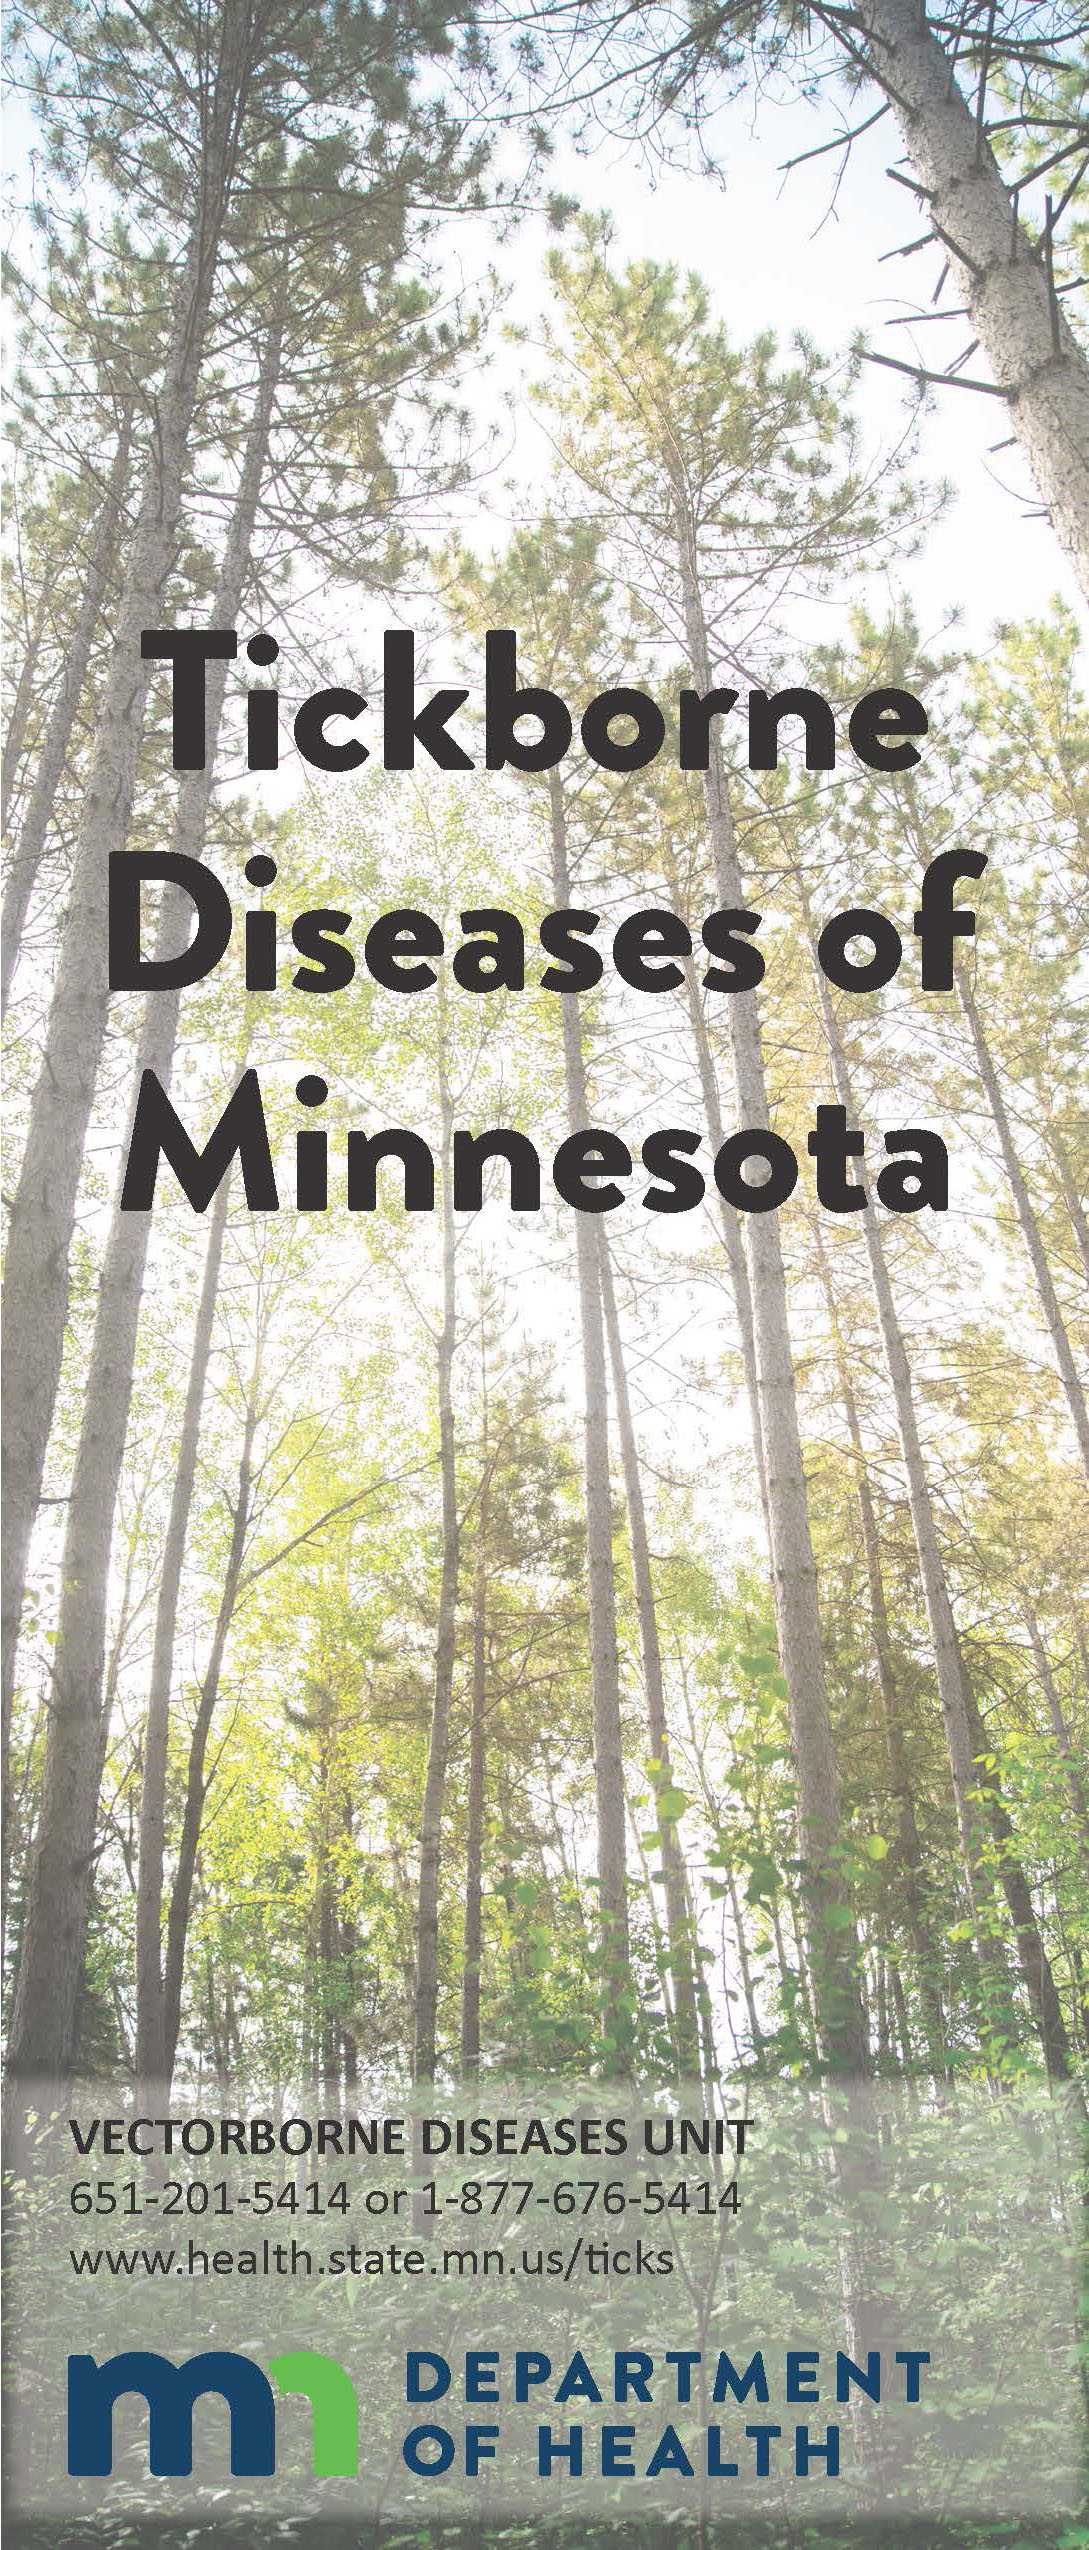 image of Tickborne Diseases of Minnesota